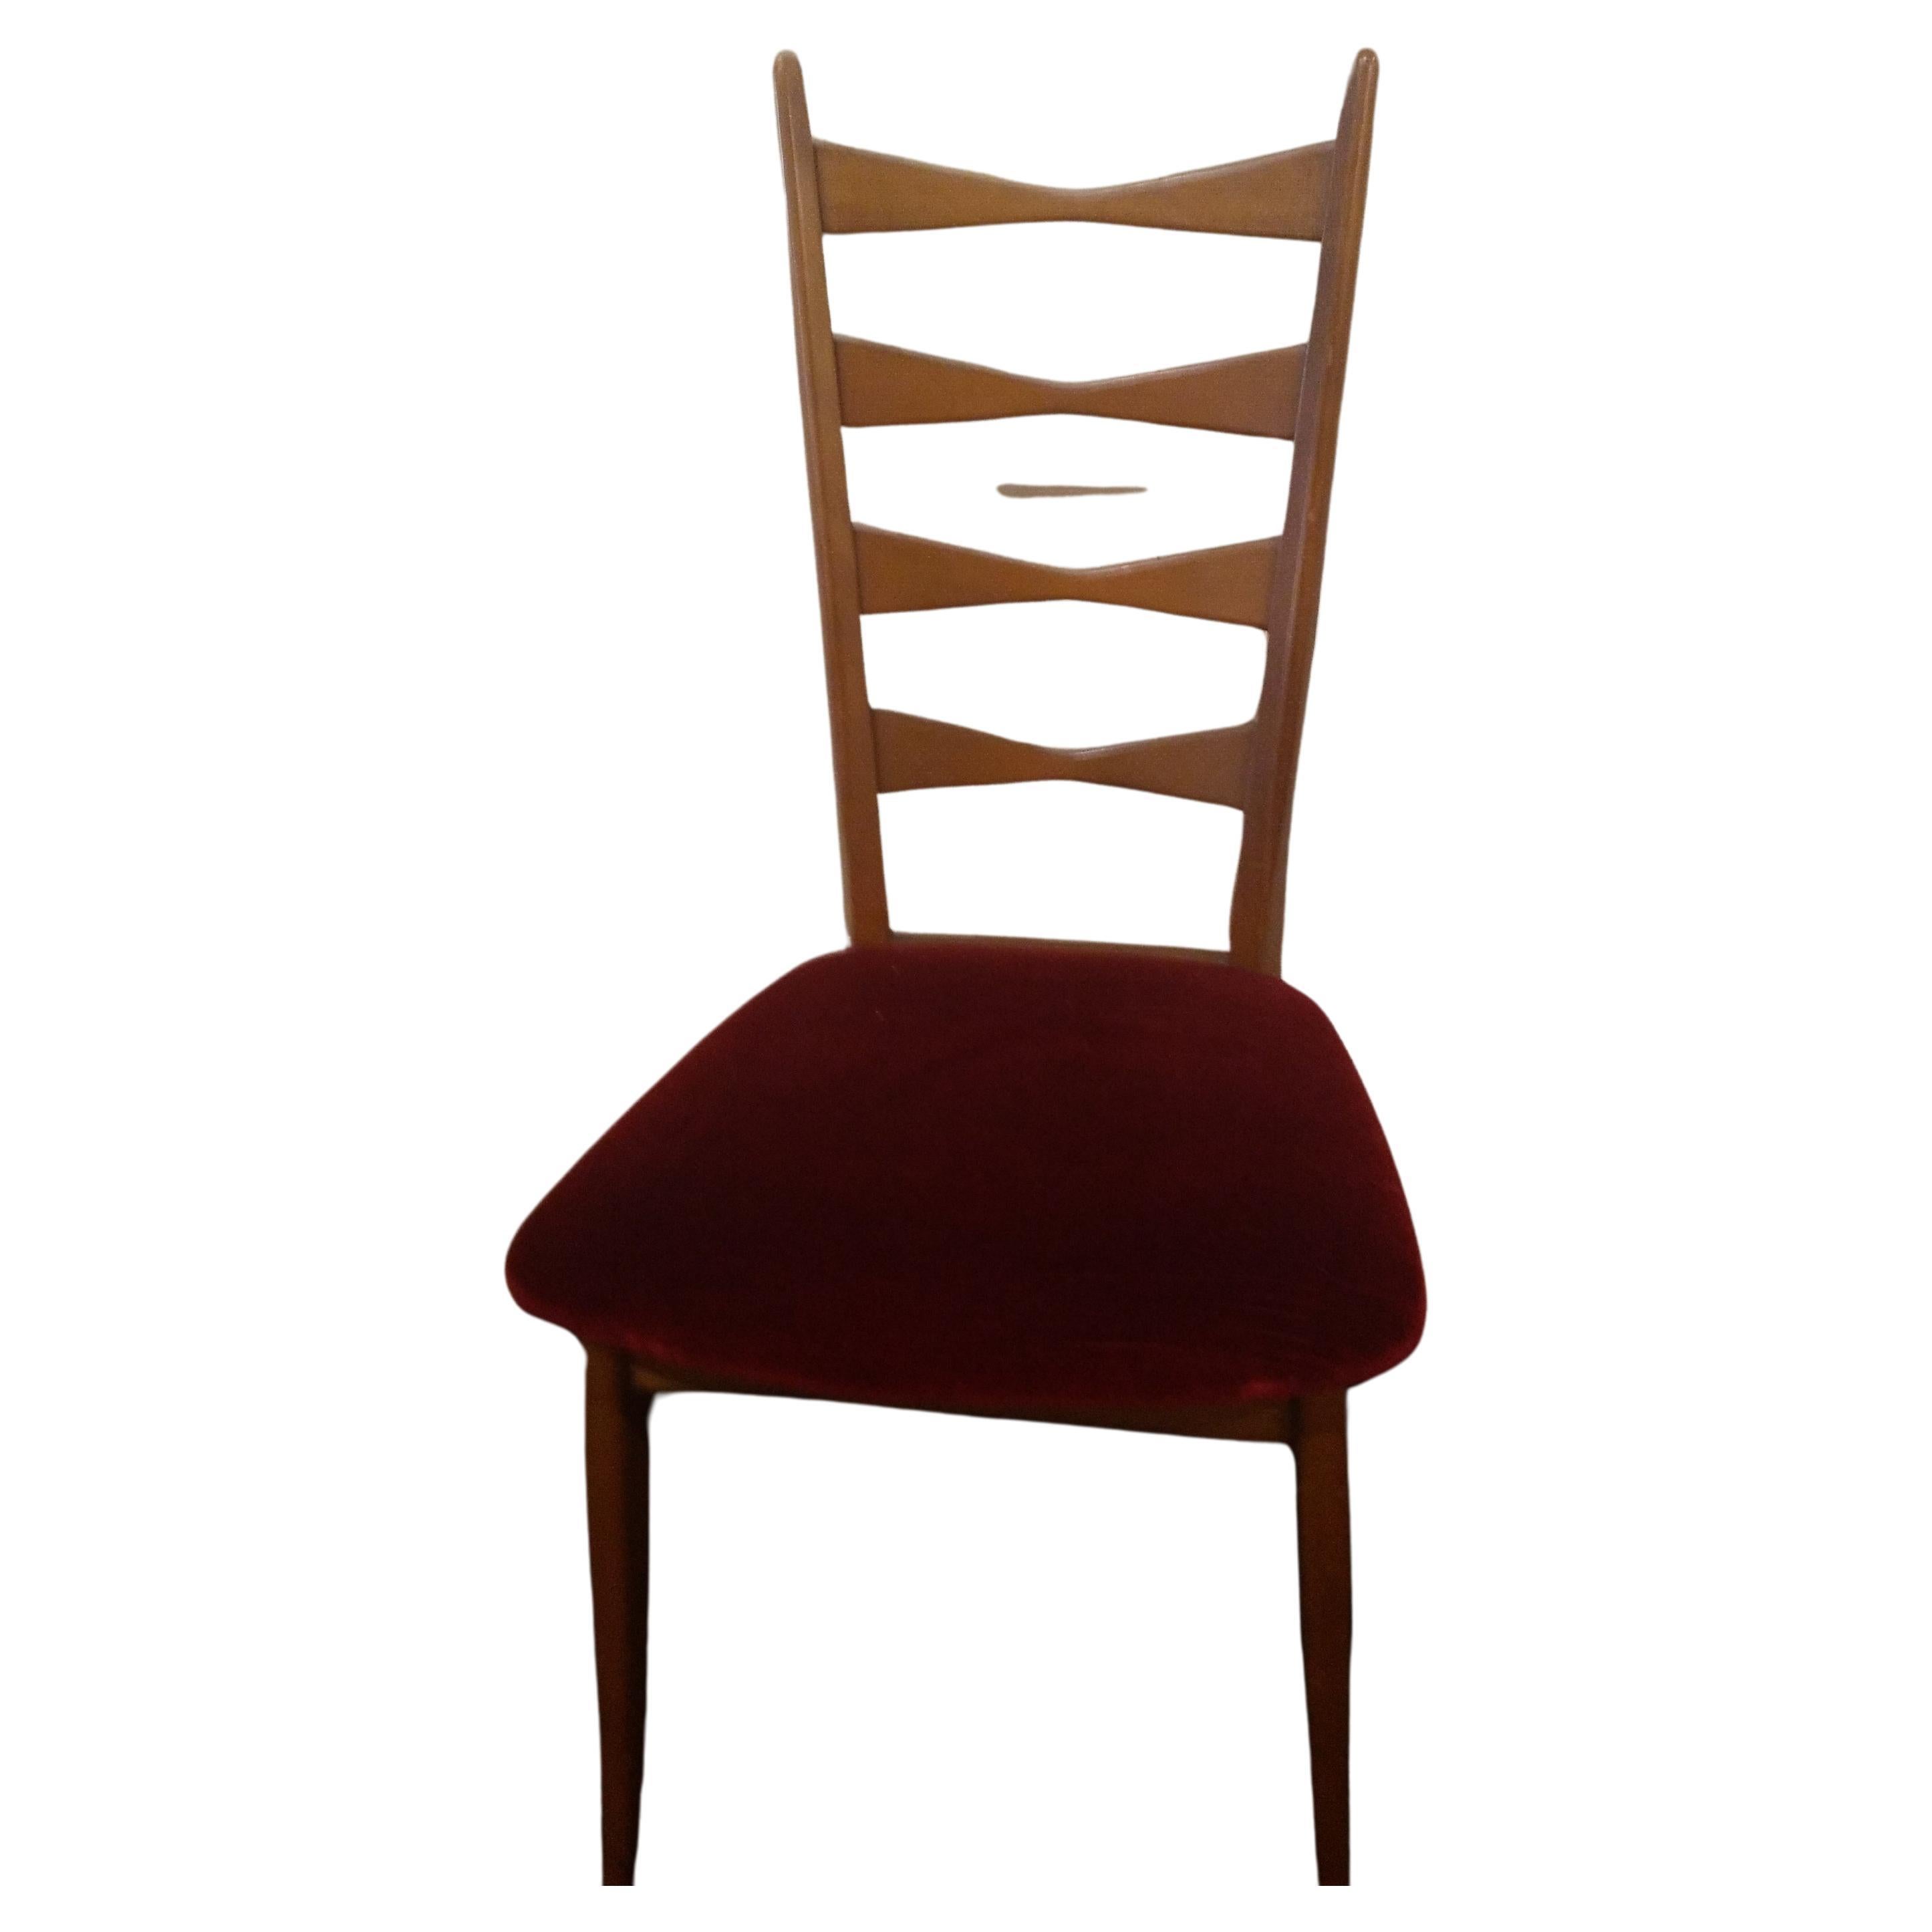 4 Les chaises danoises modernes du milieu du siècle, originales dans toutes leurs parties, ont un dossier haut et sont fabriquées en bois  bois clair, avec le siège d'origine en velours rouge foncé. Ces chaises sont élégantes et stylées.
Ces chaises